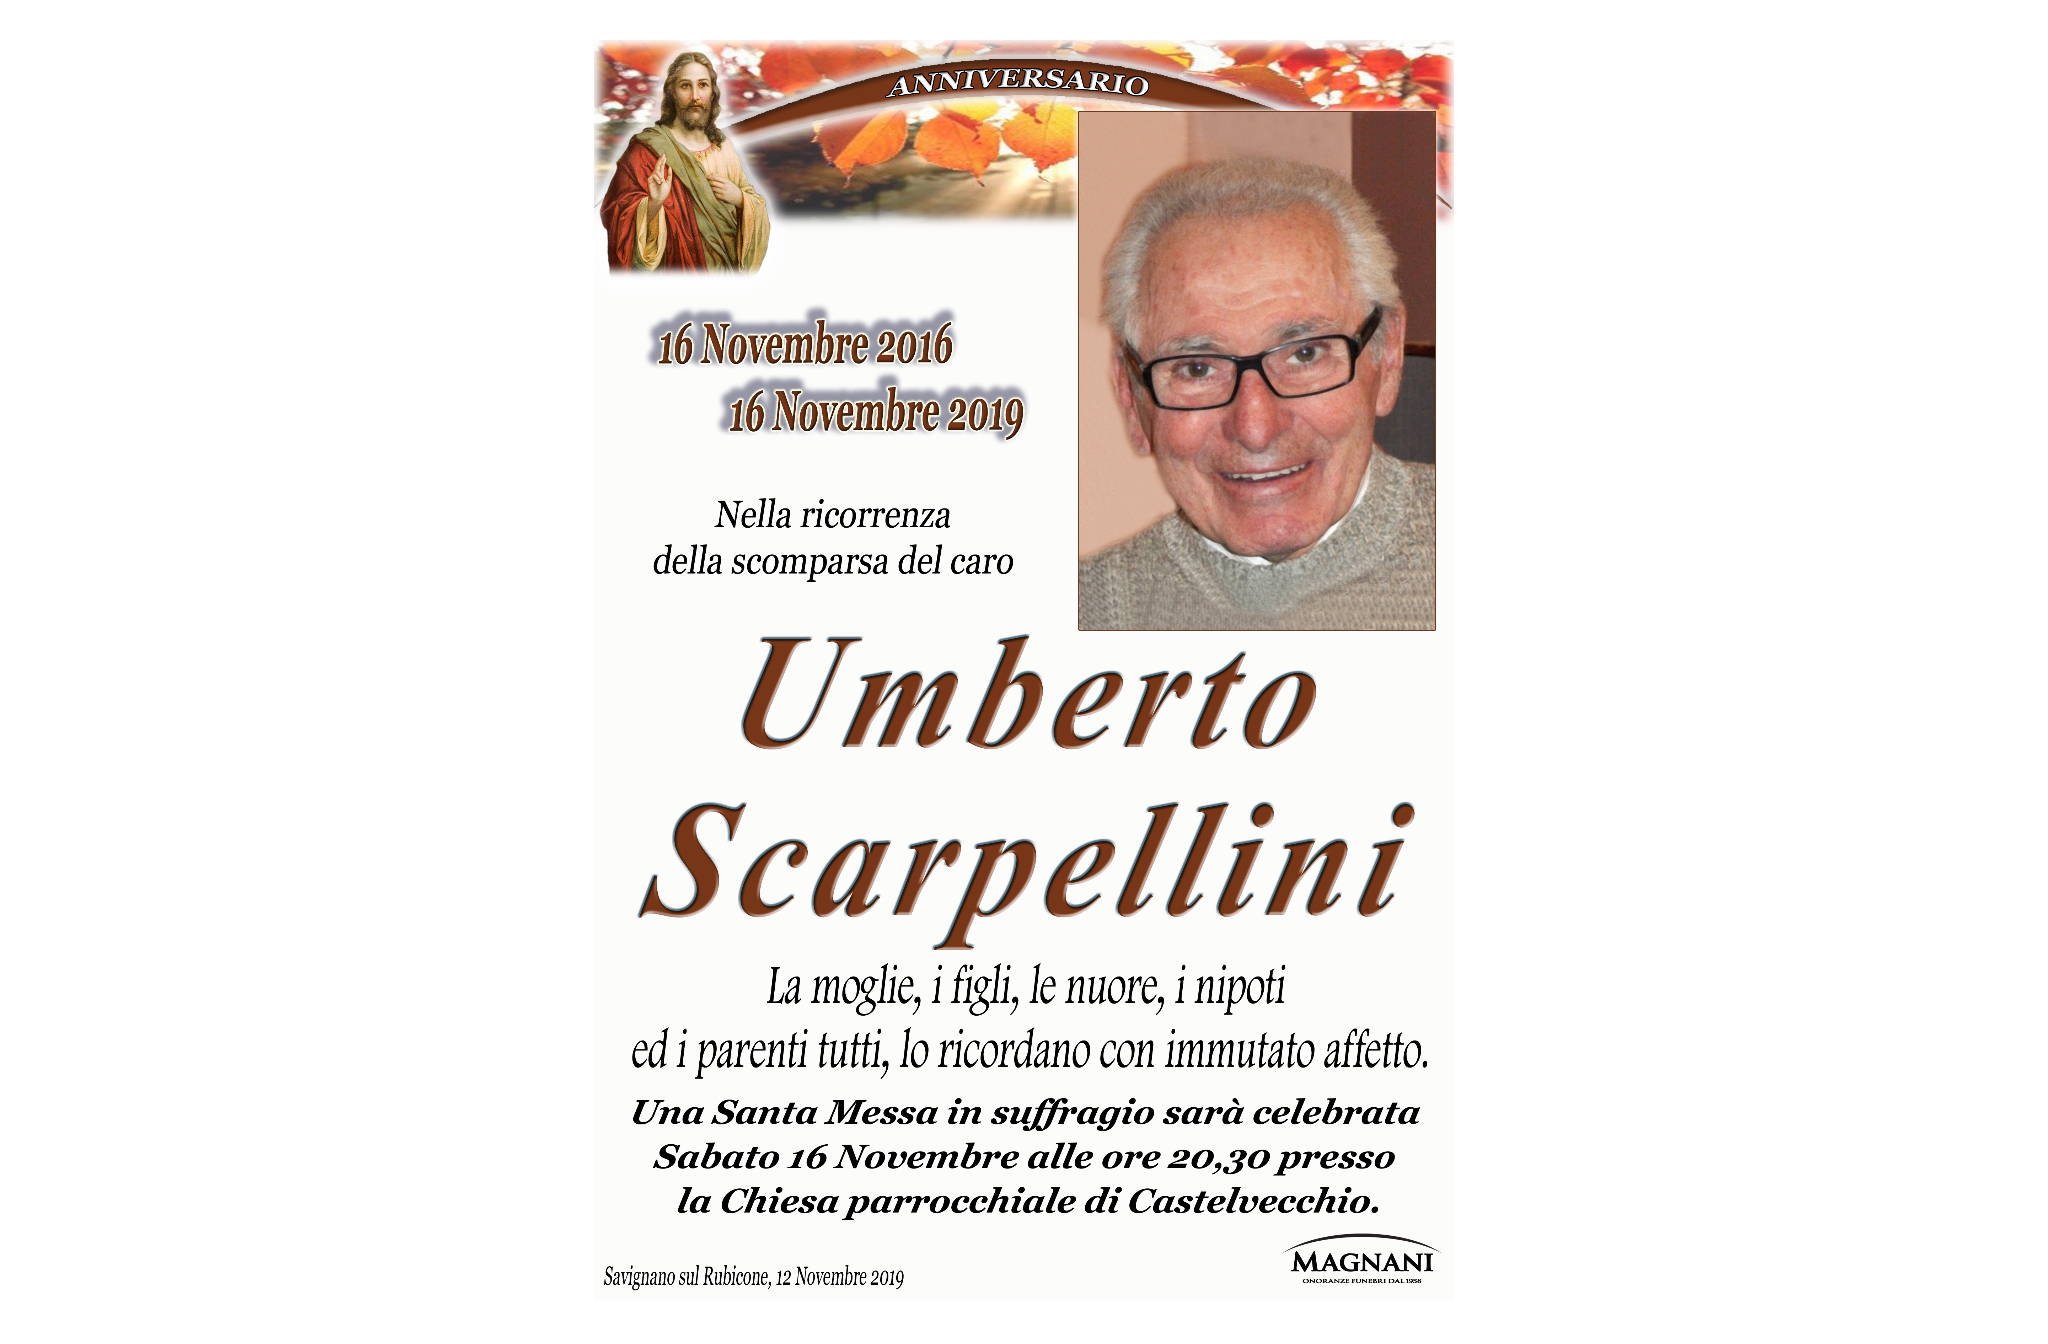 Umberto Scarpellini